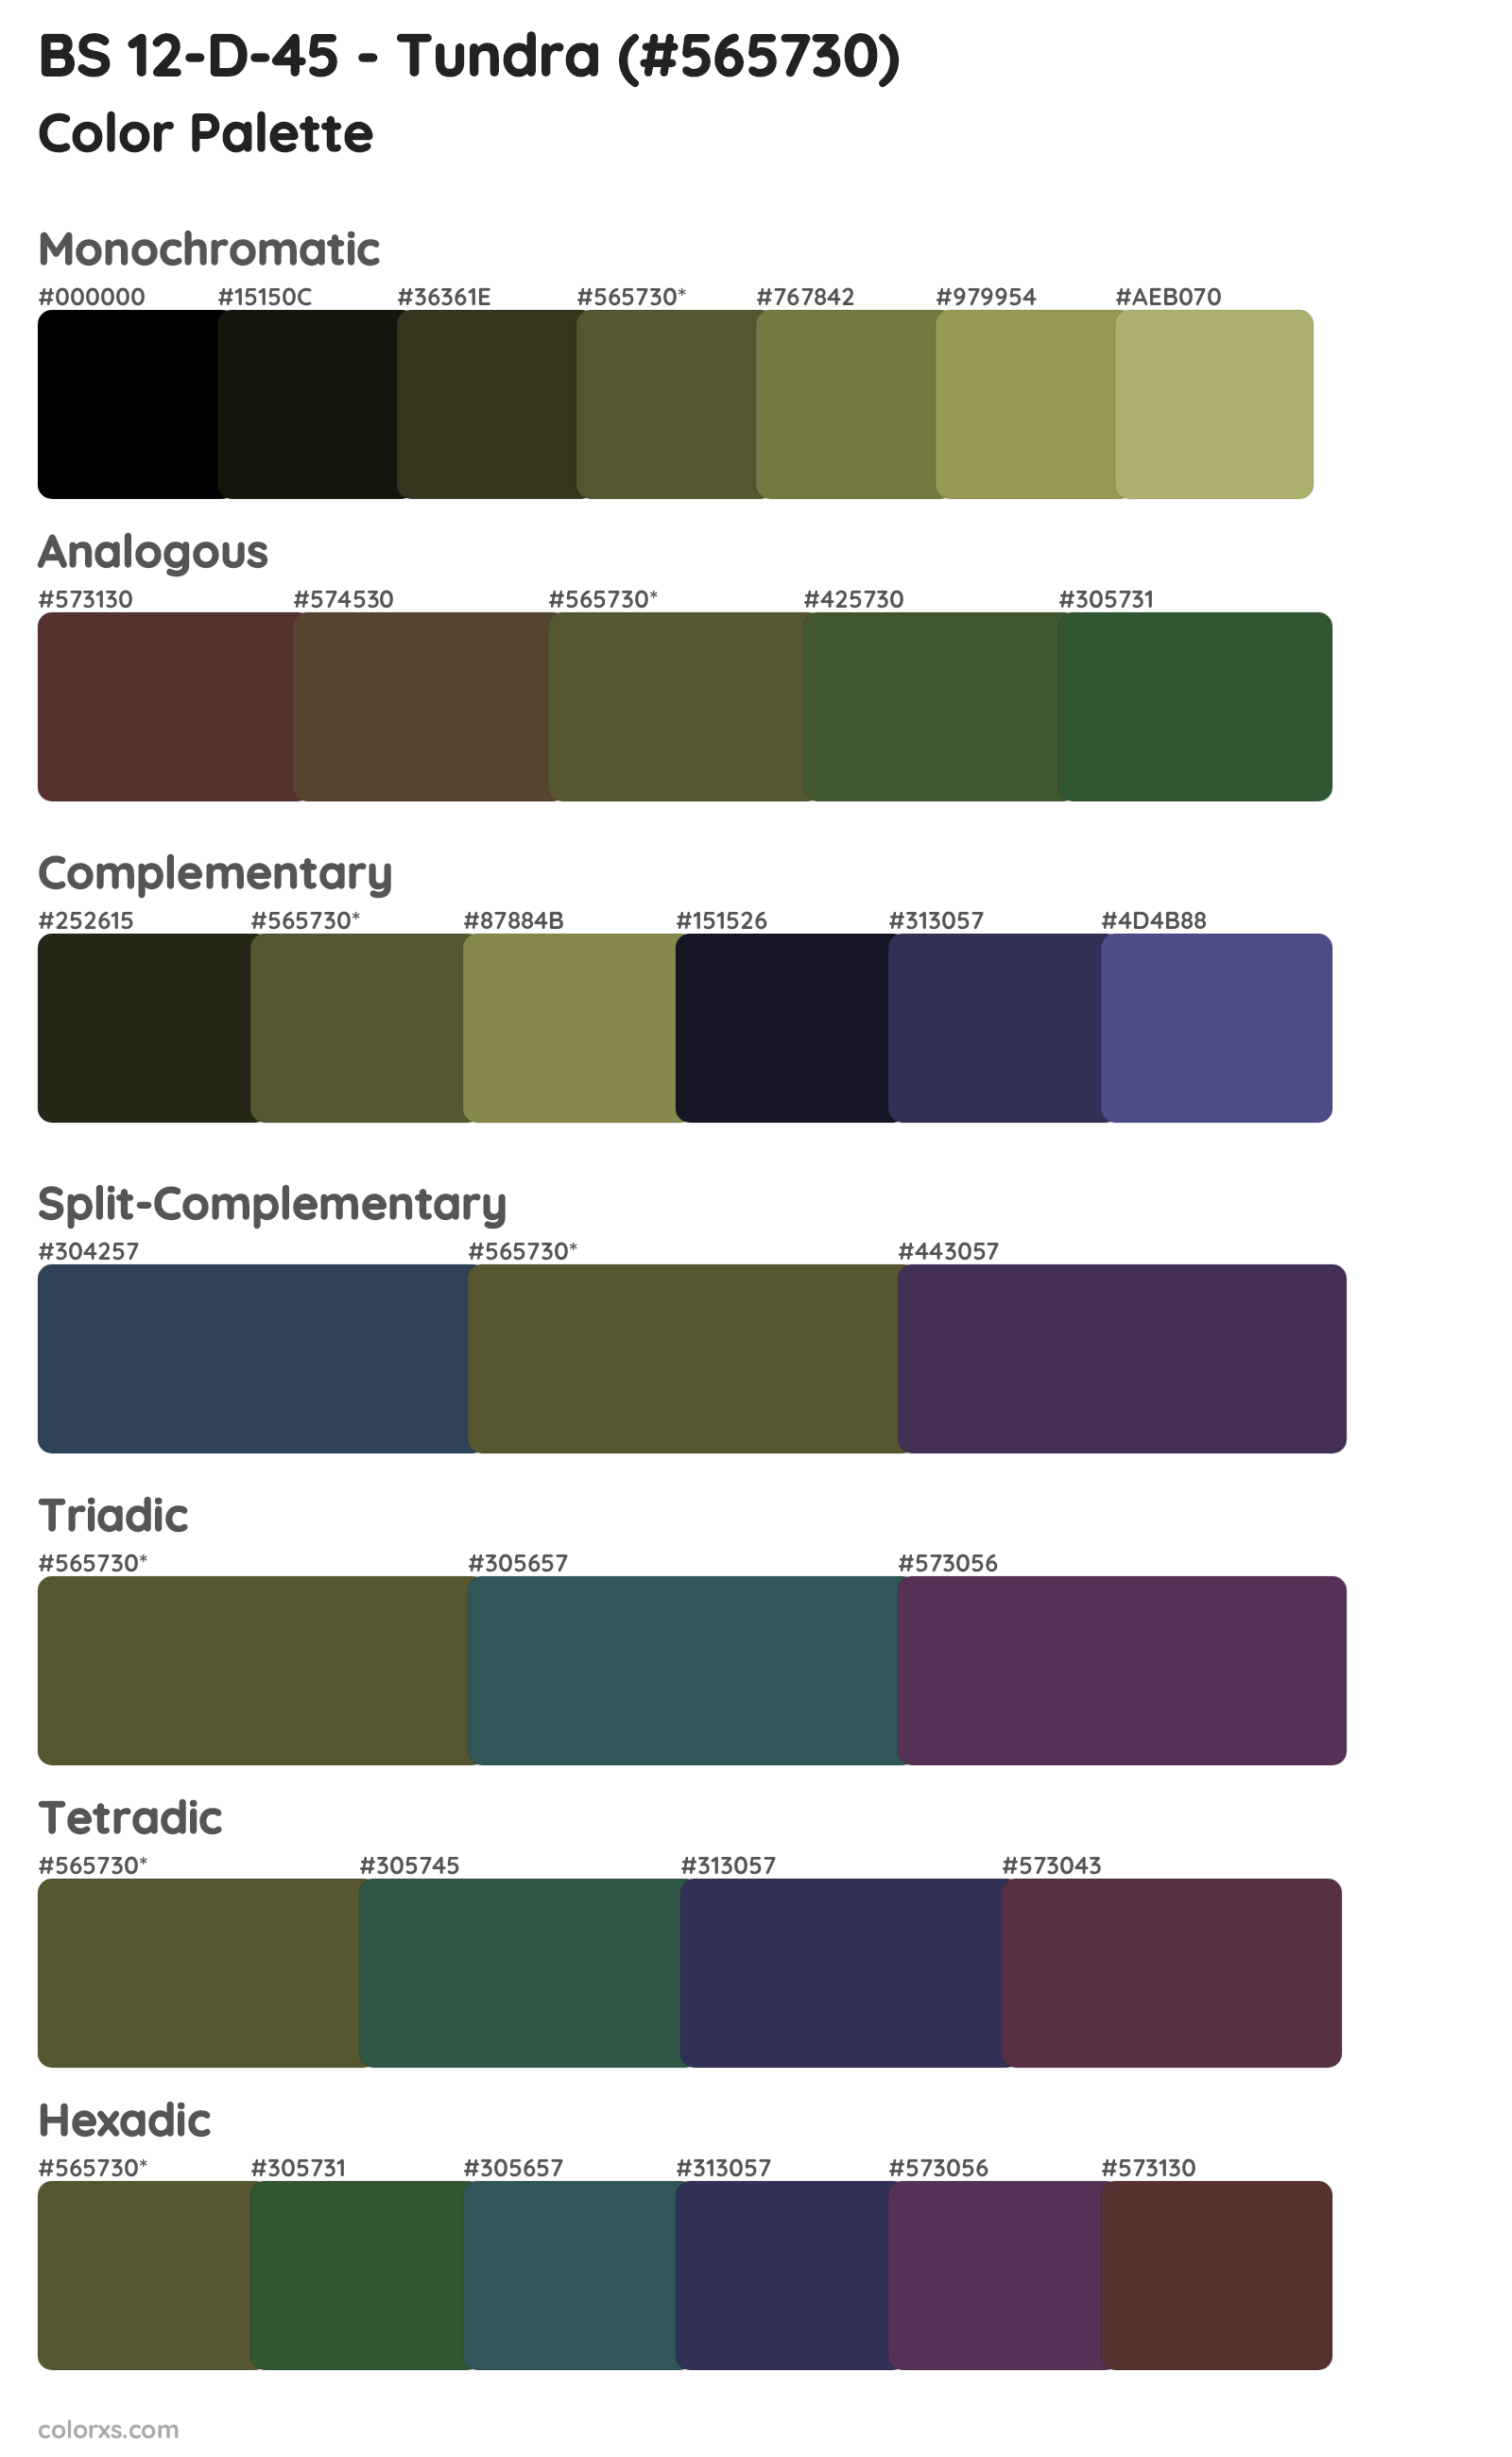 BS 12-D-45 - Tundra Color Scheme Palettes